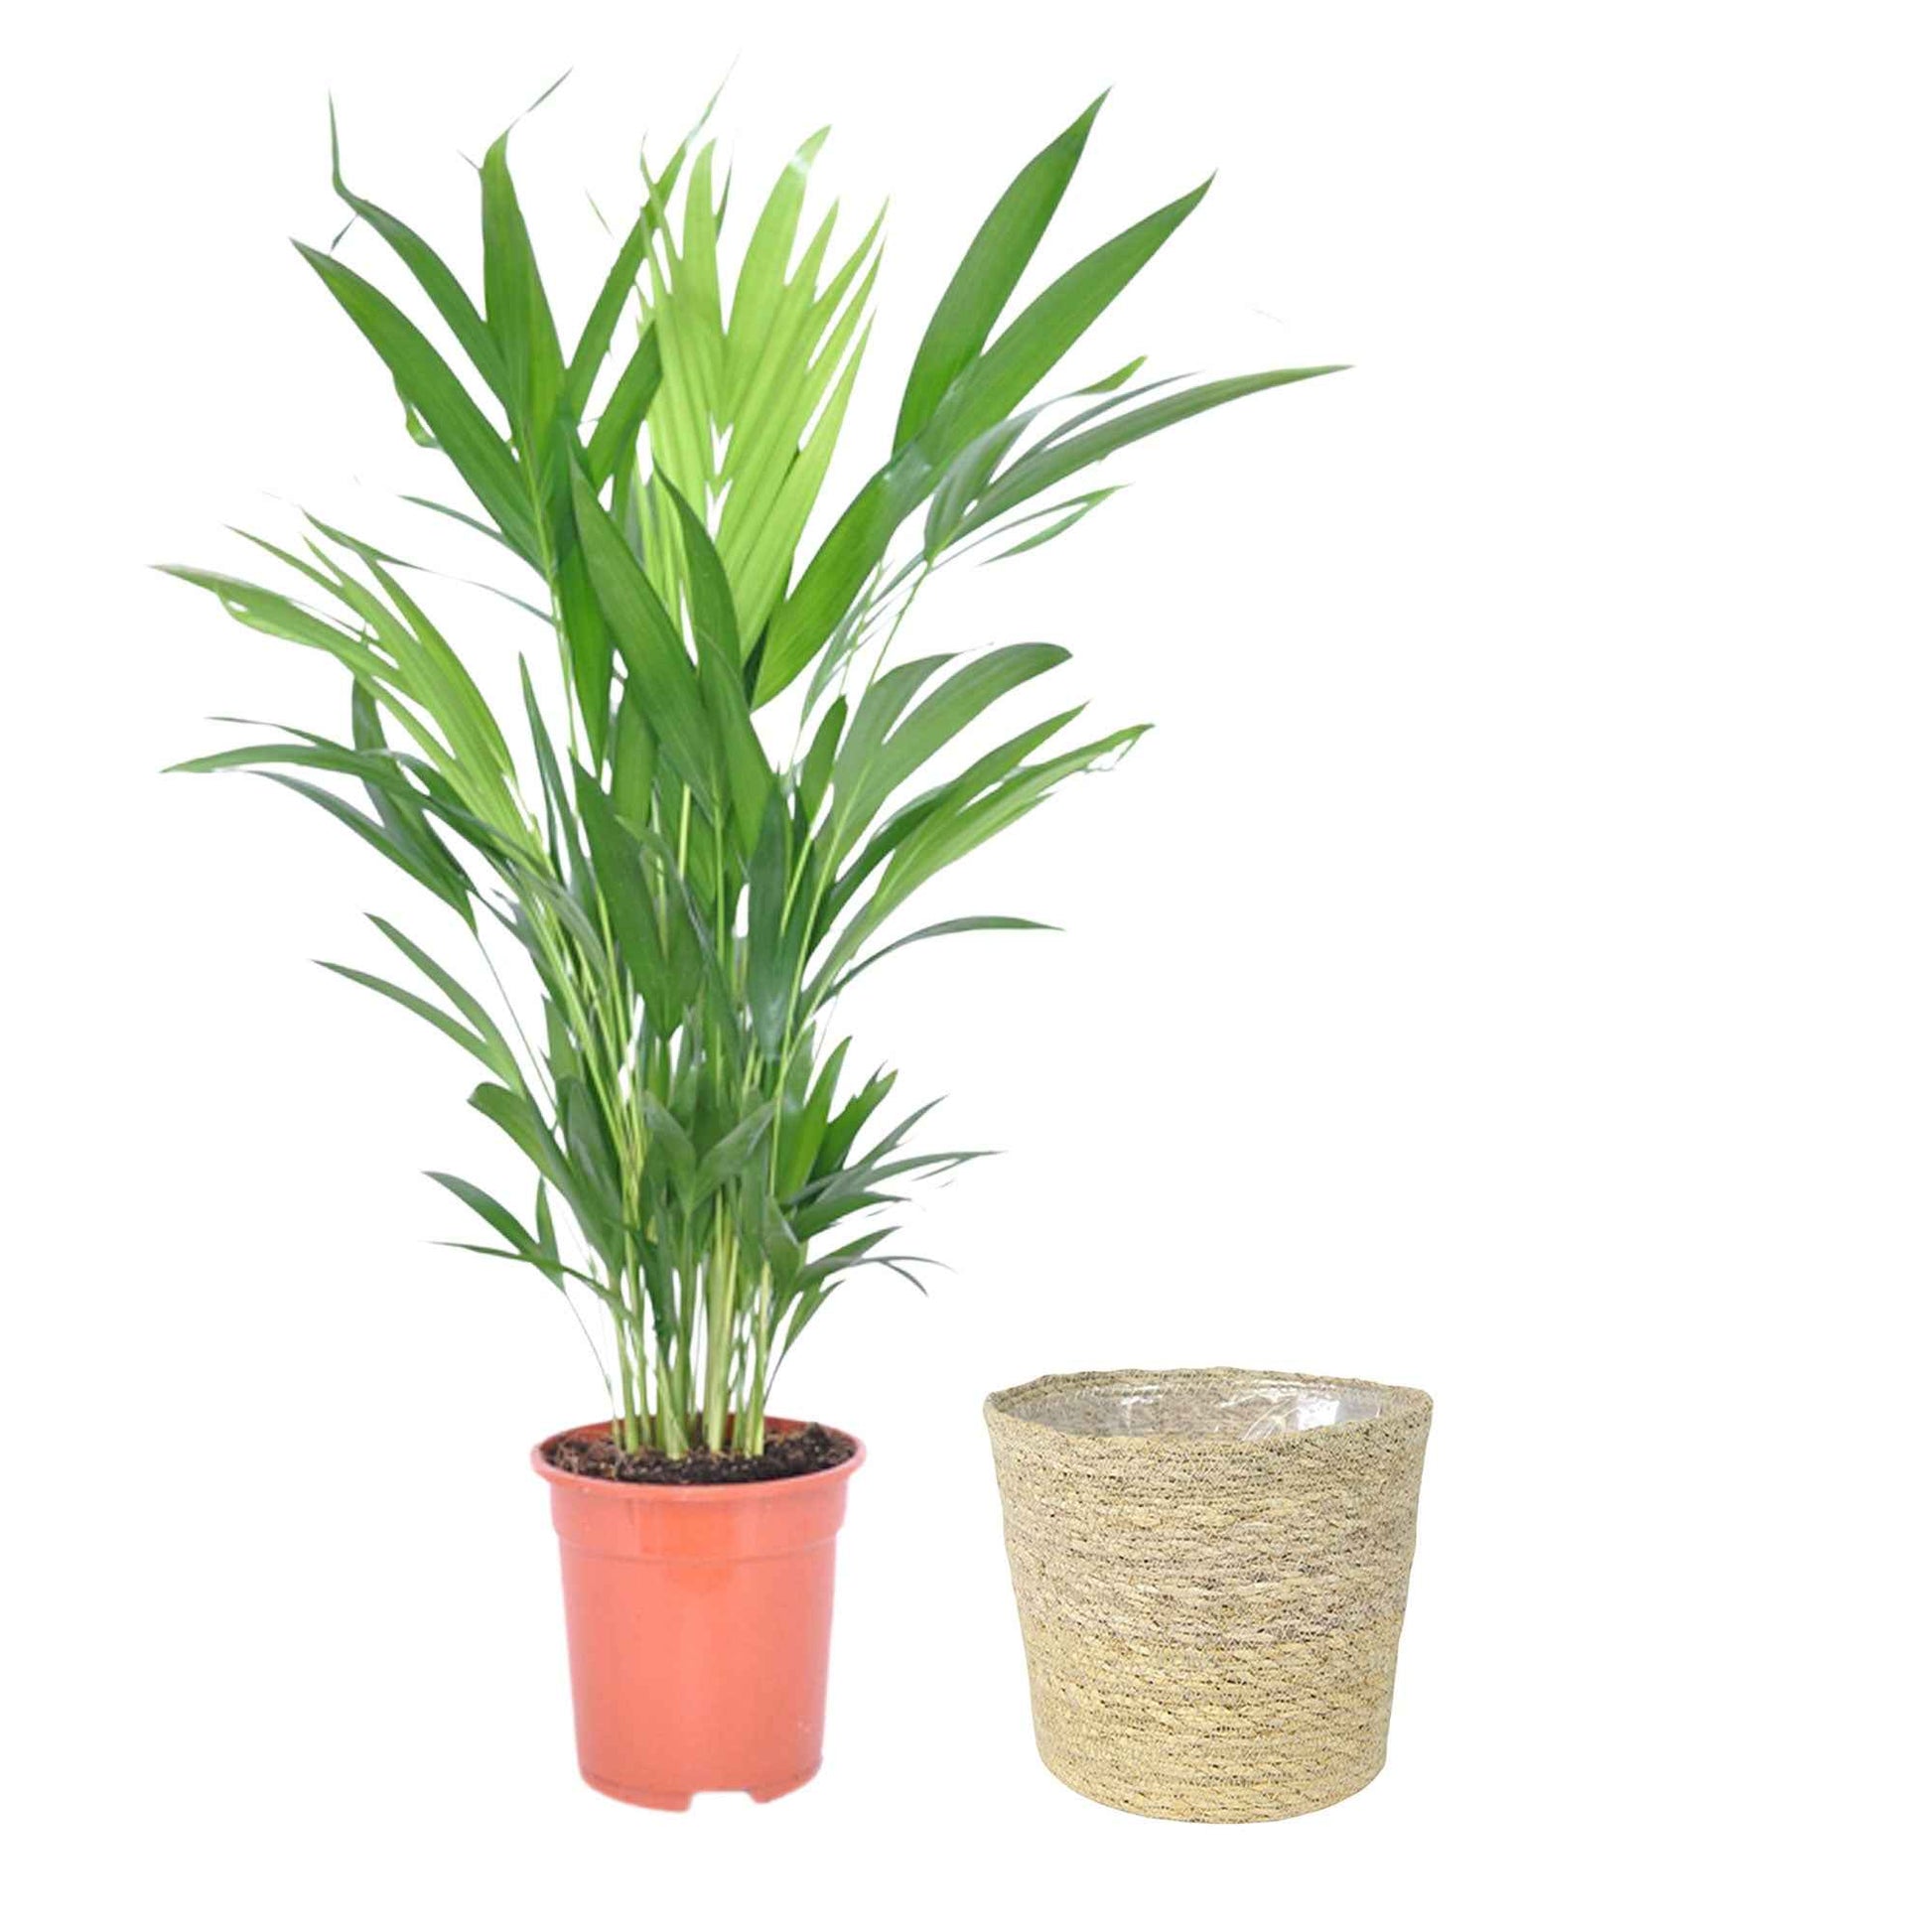 Areca palm Dypsis lutescens incl. rieten mand naturel - Groene kamerplanten in sierpot